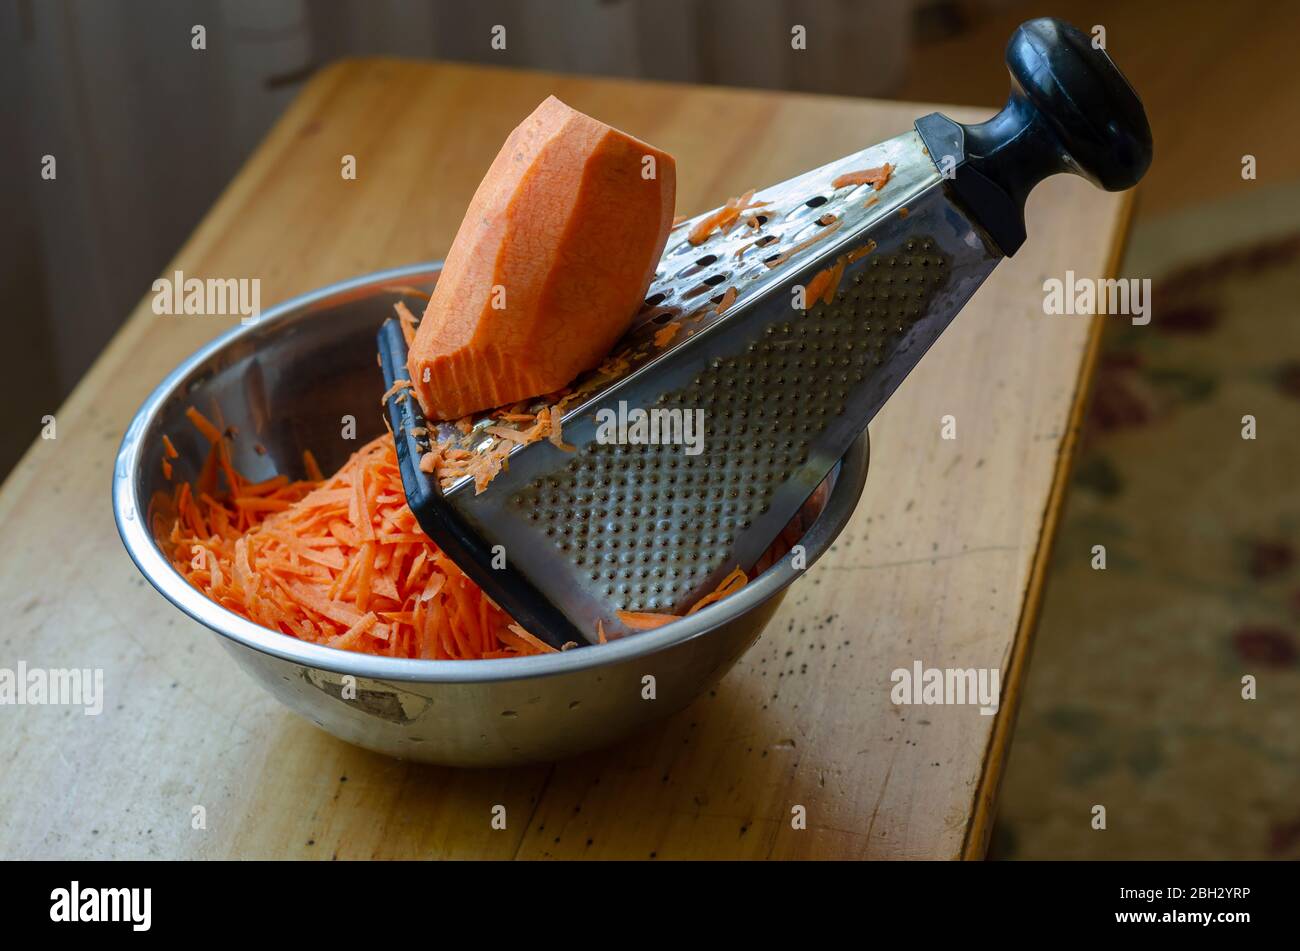 Ein großes Stück Karotten liegt auf einer Reibe. Unterbrochener Zerkleinerungsprozess rohes Gemüse. Der Prozess der Herstellung von Salat. Im echten Leben. Nahaufnahme. Selektiv fo Stockfoto